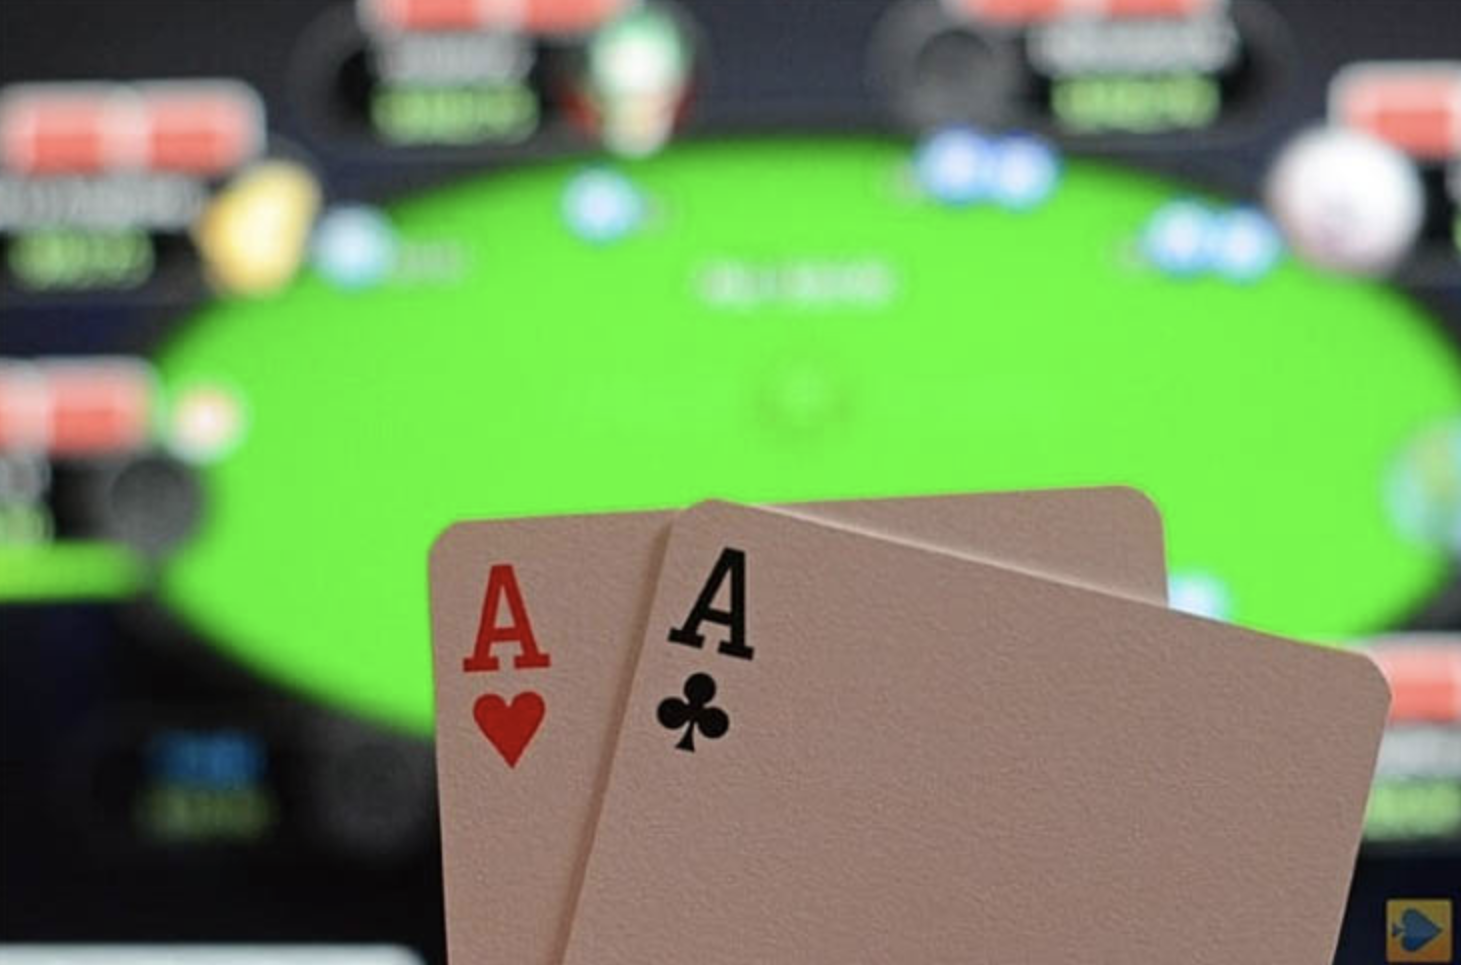 играть покер на деньги онлайн с выводом